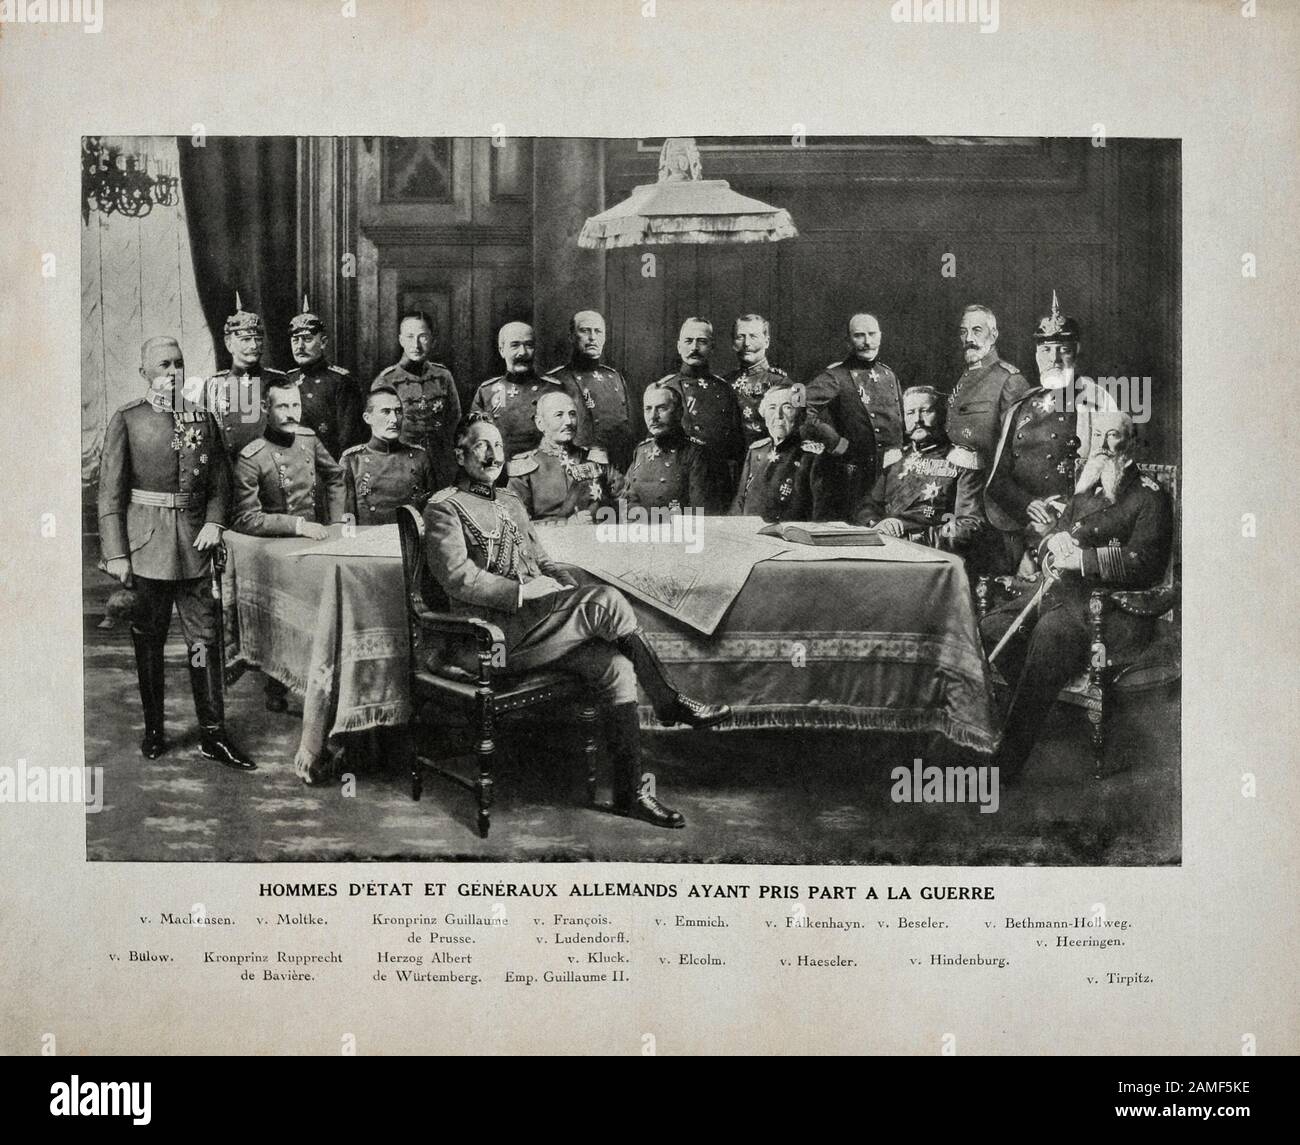 German statesmen and generals who took part in the World War I.  Left to right: von Bulow, von Machensen, von Moltke, Kronprinz Rupprecht of Bavaria, Stock Photo